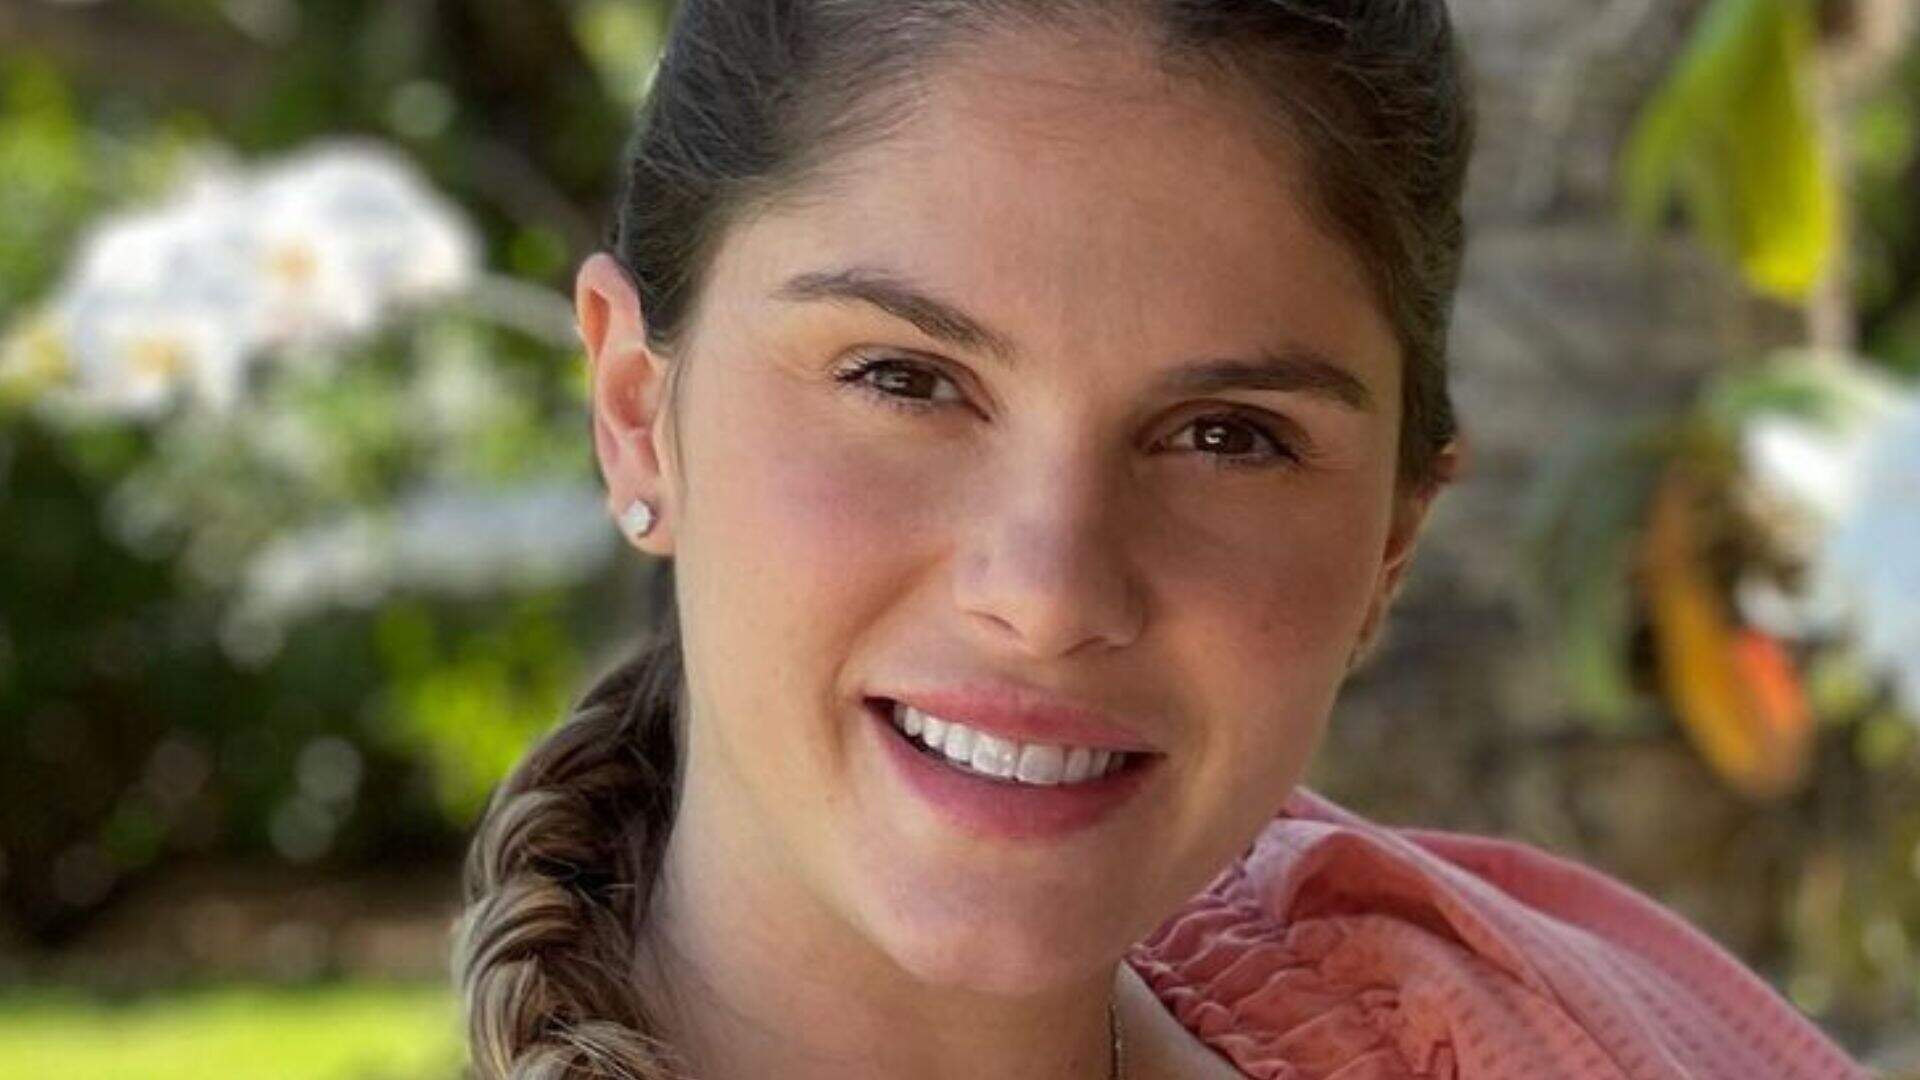 Grávida de gêmeos, Bárbara Evans fala sobre perrengues: “Tenho até vergonha” - Metropolitana FM